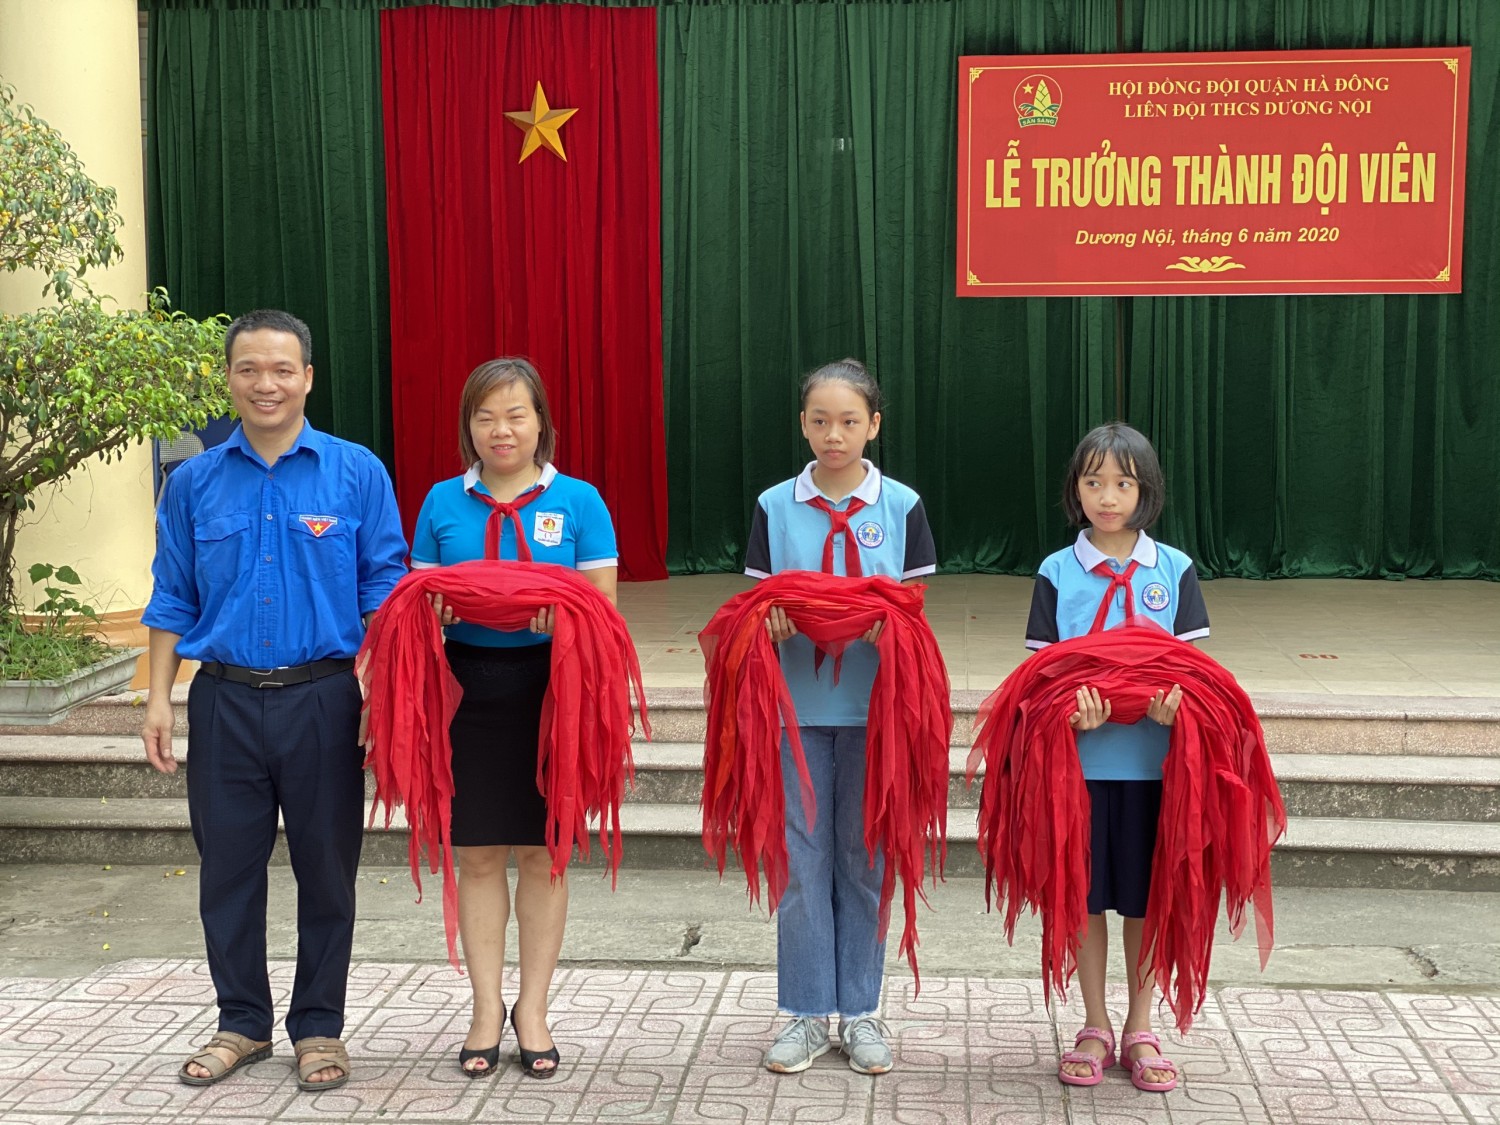 Lễ trao khăn quàng đỏ trong lễ trưởng thành đội THCS Dương Nội